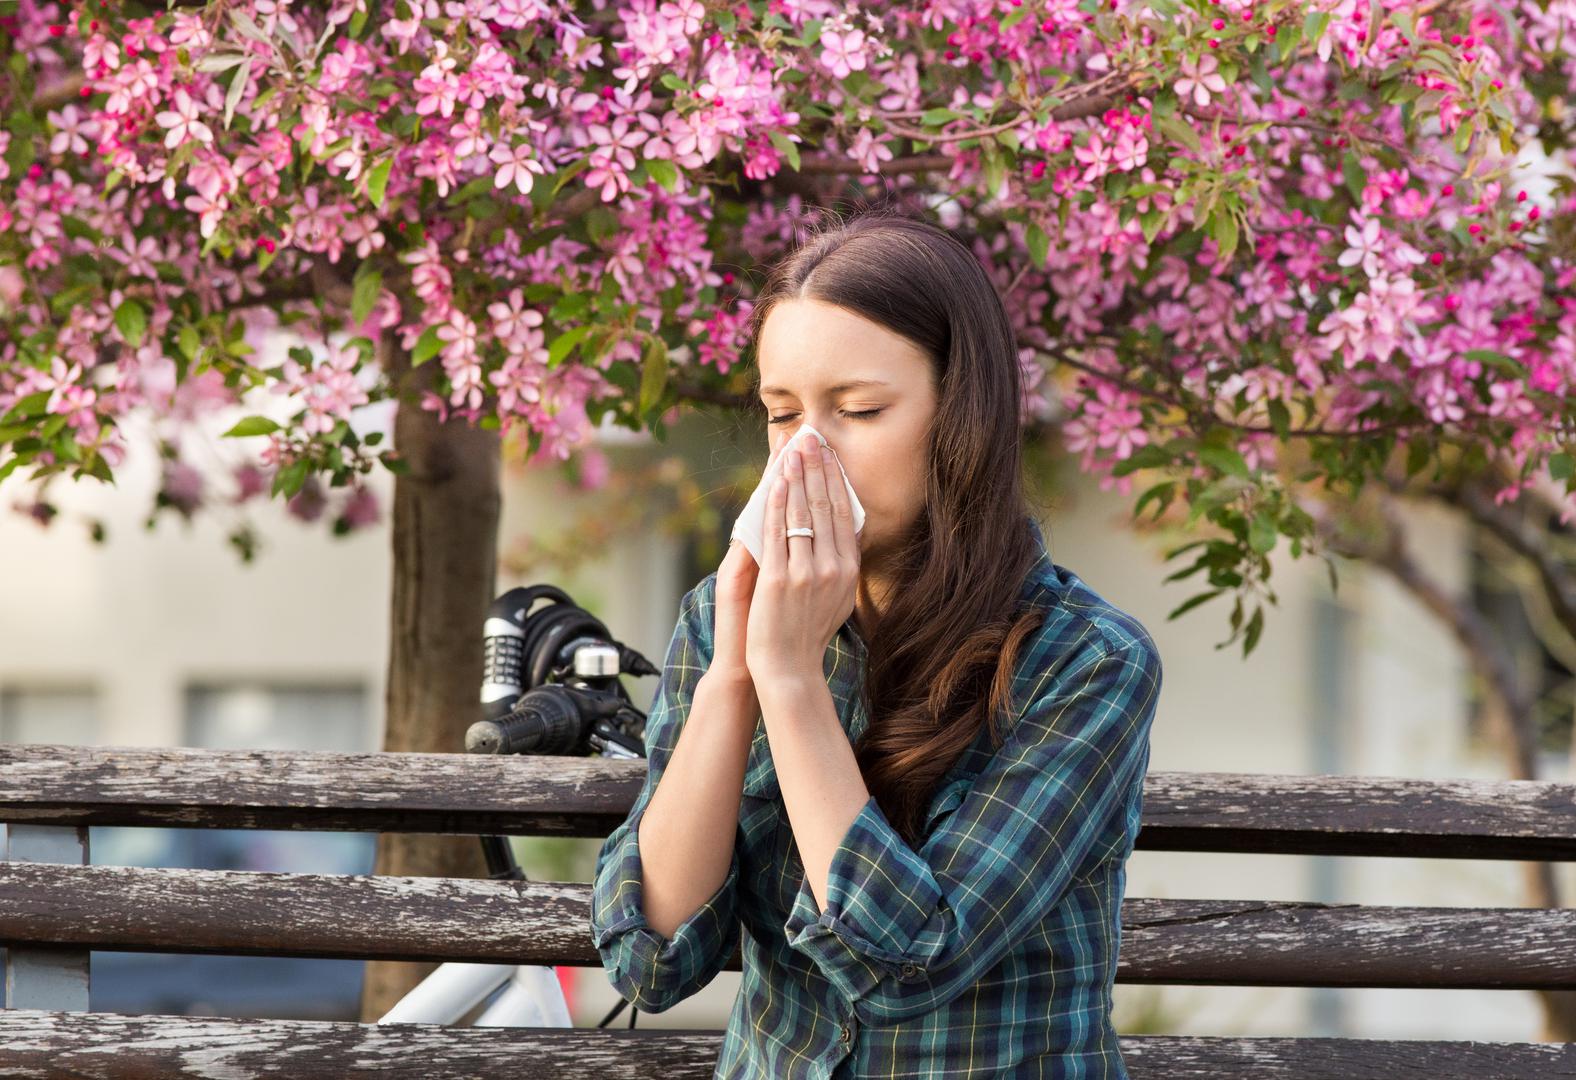 Alergije: Slično prehladama, alergije mogu uzrokovati začepljen nos i povećanje sluzi što pridonosi halitozi. Možete malo ublažiti začepljenost - i loš zadah - ispiranjem nosnih prolaza i pijenjem vode kao da imate virus.